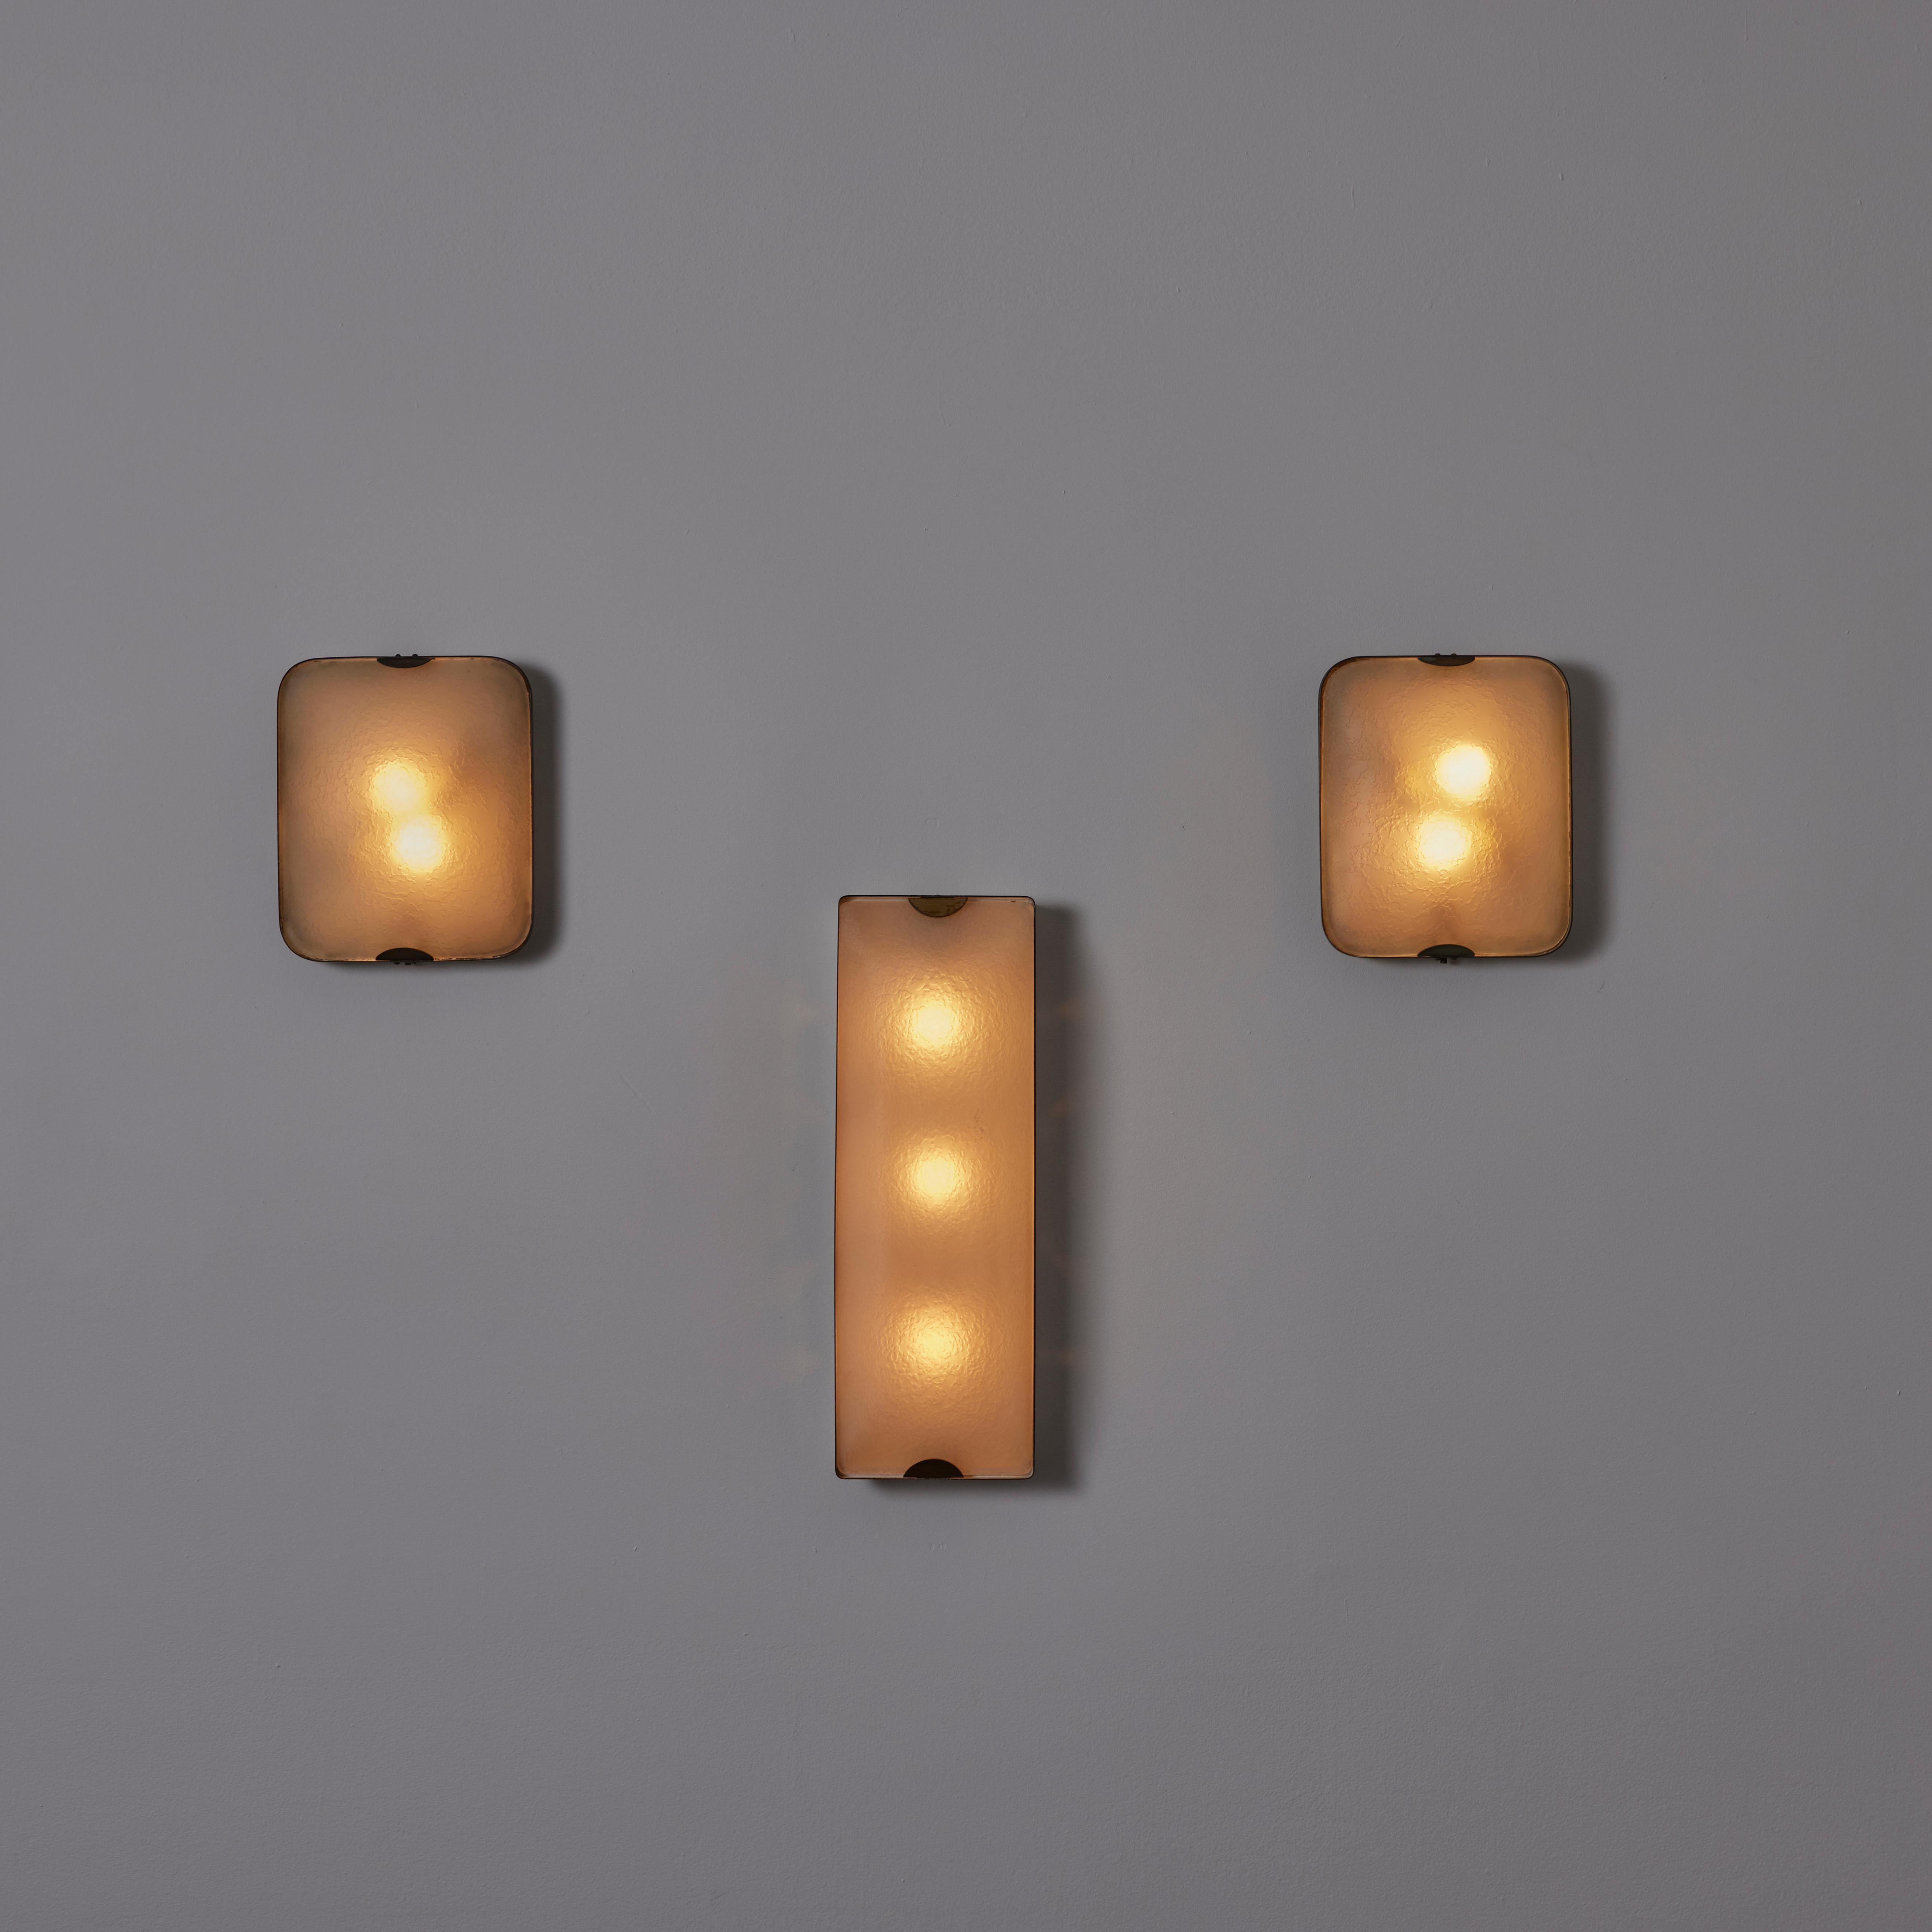 Enameled Single Wall or Ceilng Light by Fontana Arte 